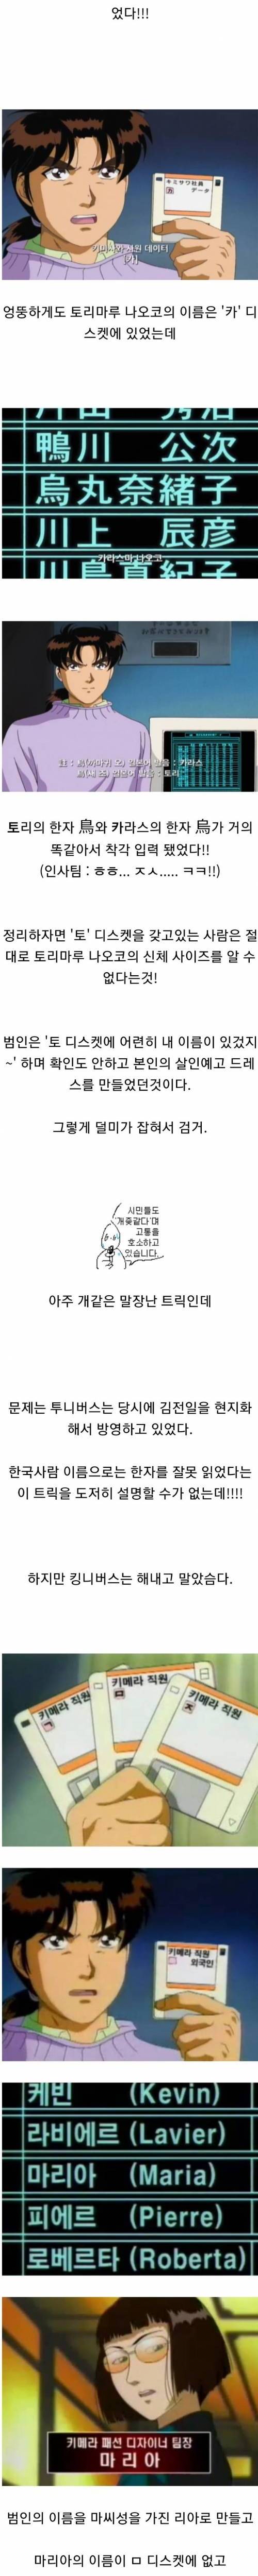 [스압] 투니버스 초월번역 레전드.jpg